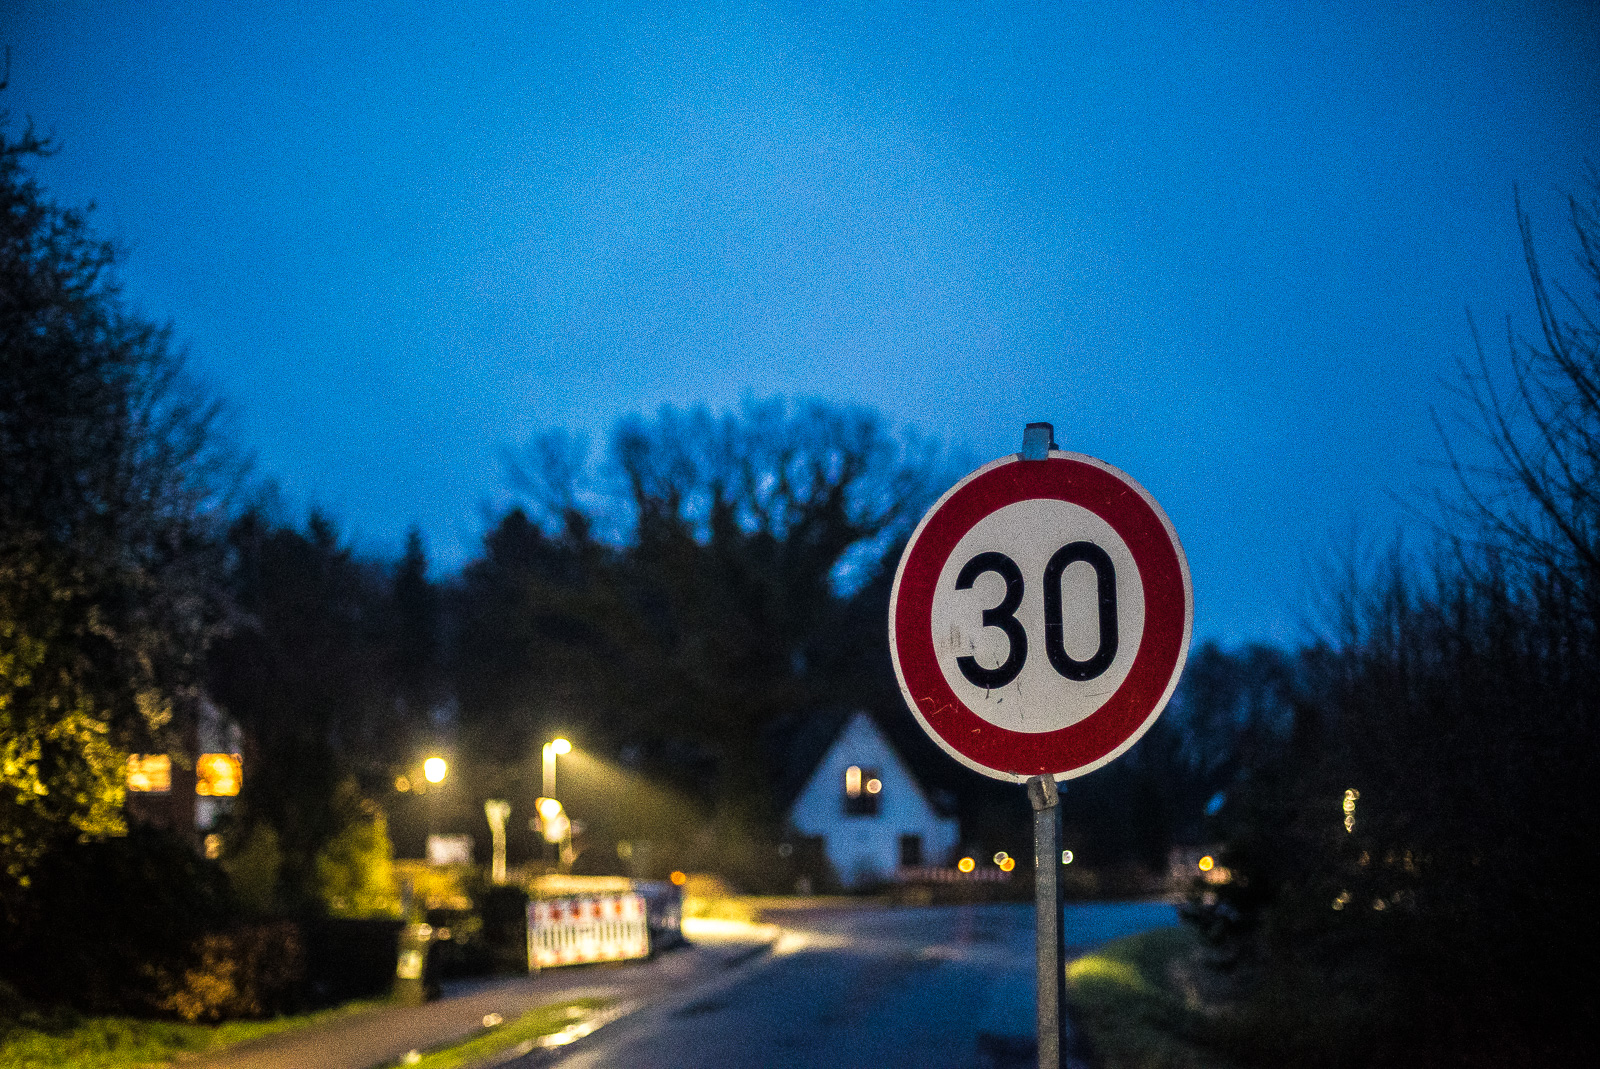 Abendszene einer Dorfstraße mit Baustelle, vorn rechts in der Schärfe ein Verkehrsschild "30"